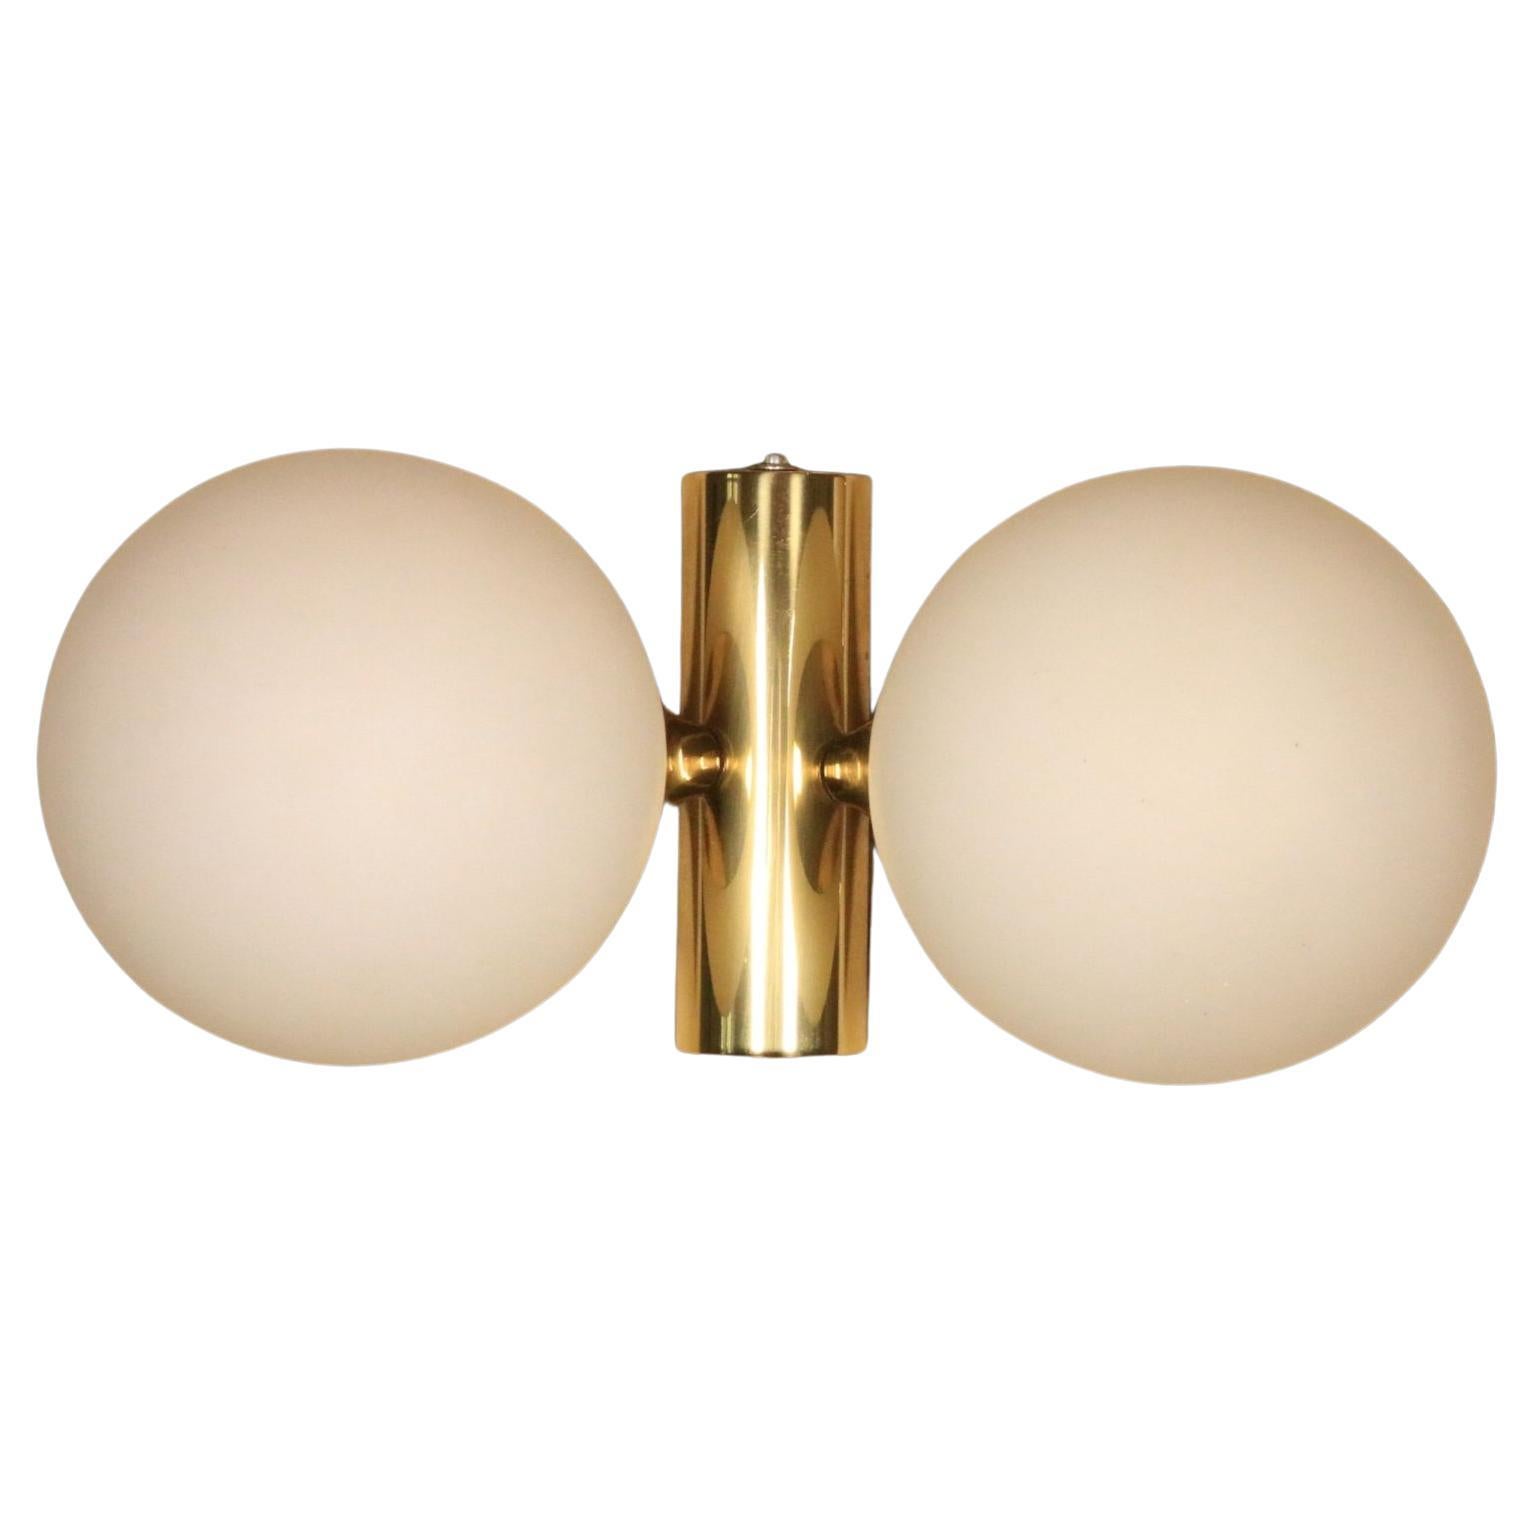 Elegant Wall Light, Brass / Opaque Glass Balls, Kaiser Leuchten, 1970s